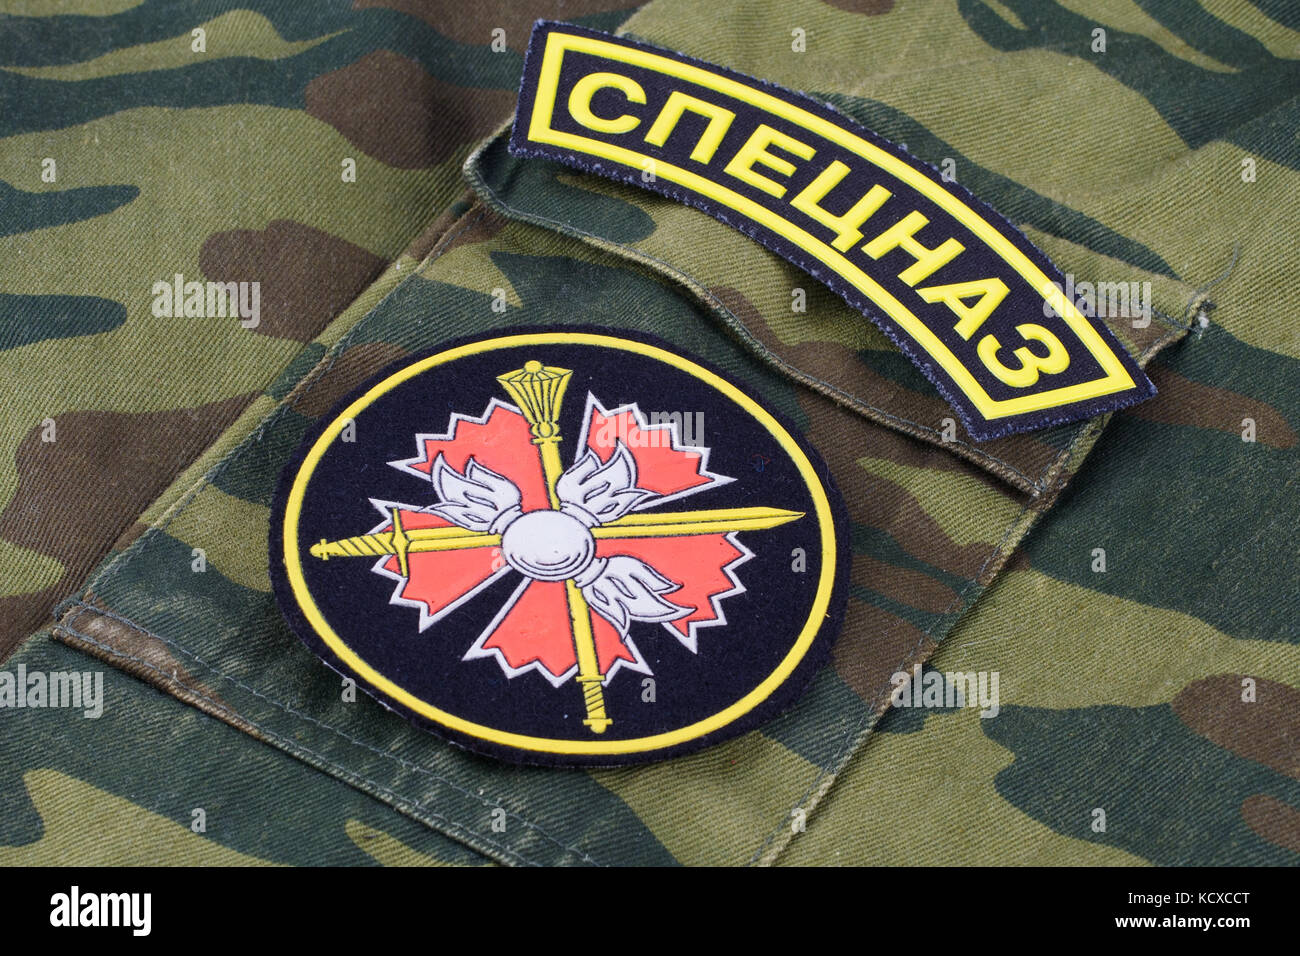 Kiev, Ukraine - fév. 25, 2017. Direction des renseignements principaux russes gru - badge uniforme Banque D'Images